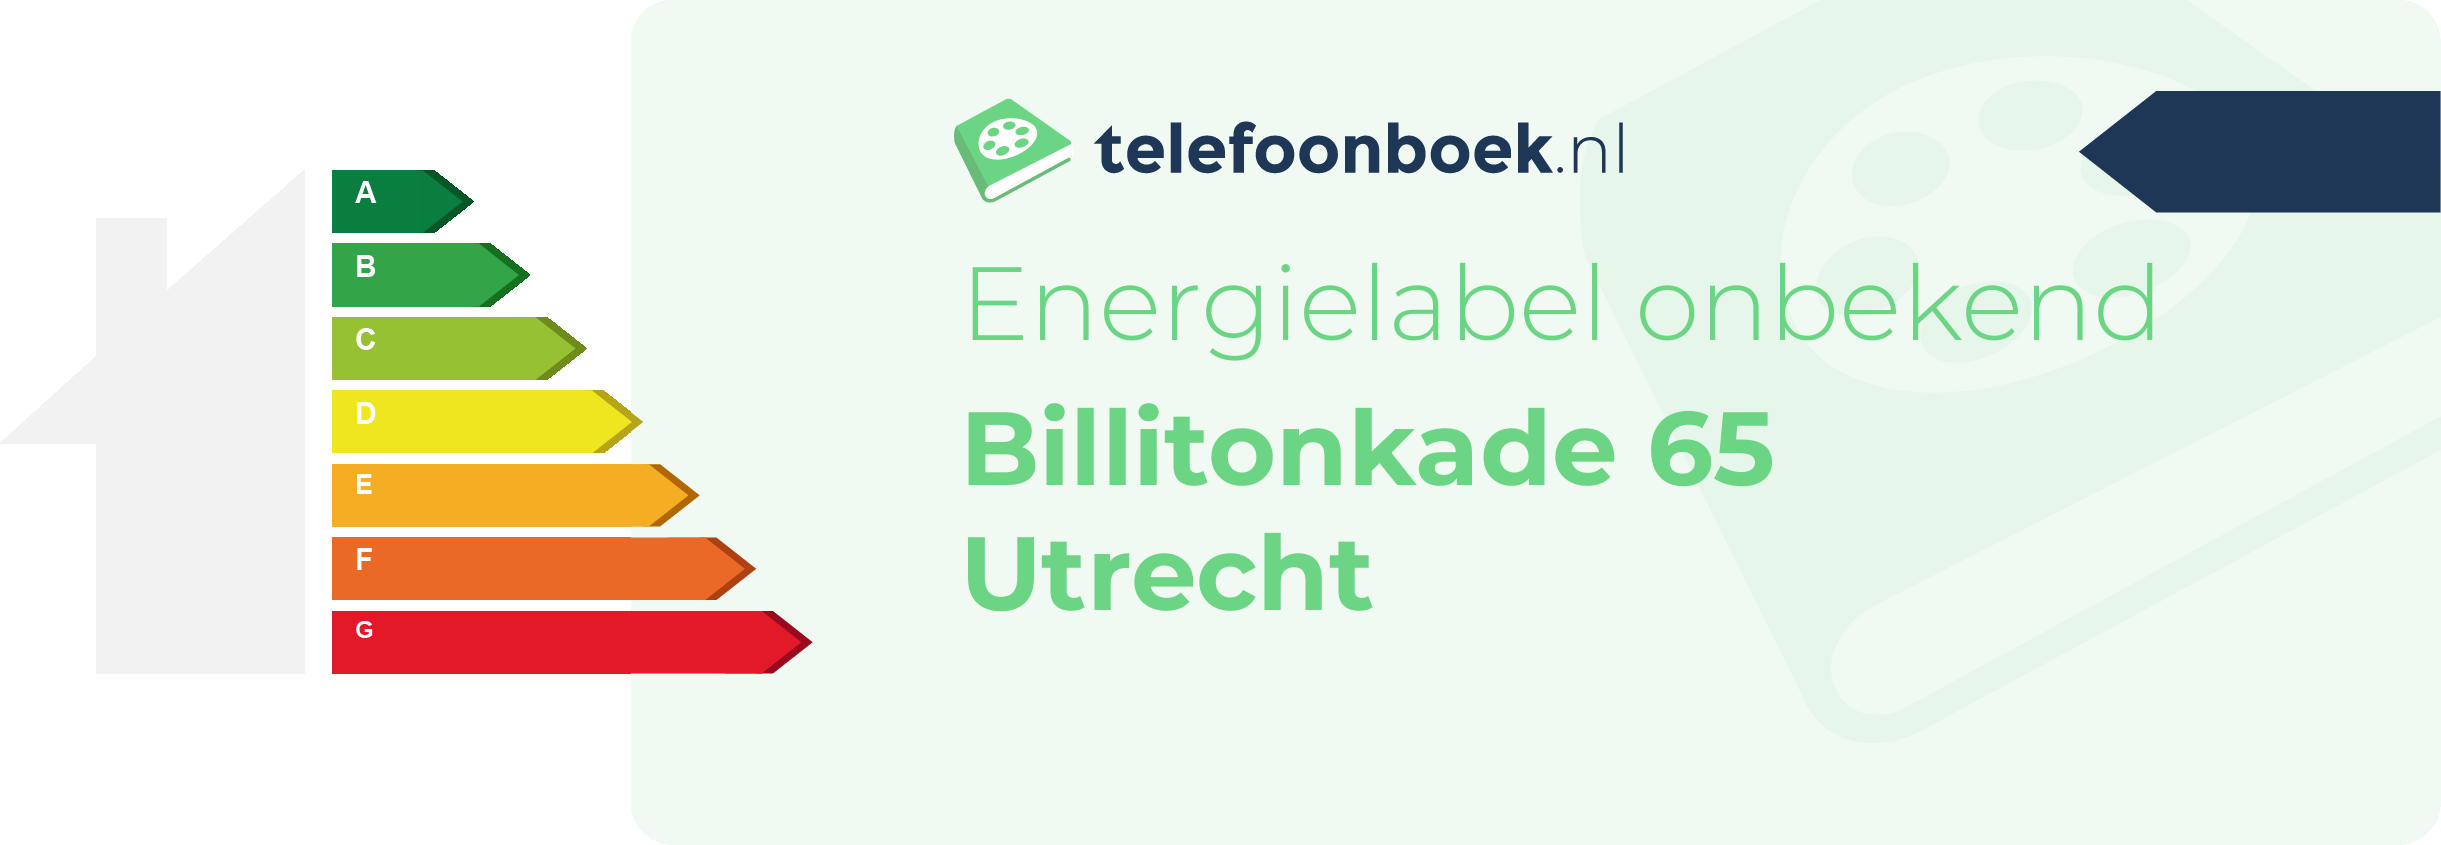 Energielabel Billitonkade 65 Utrecht